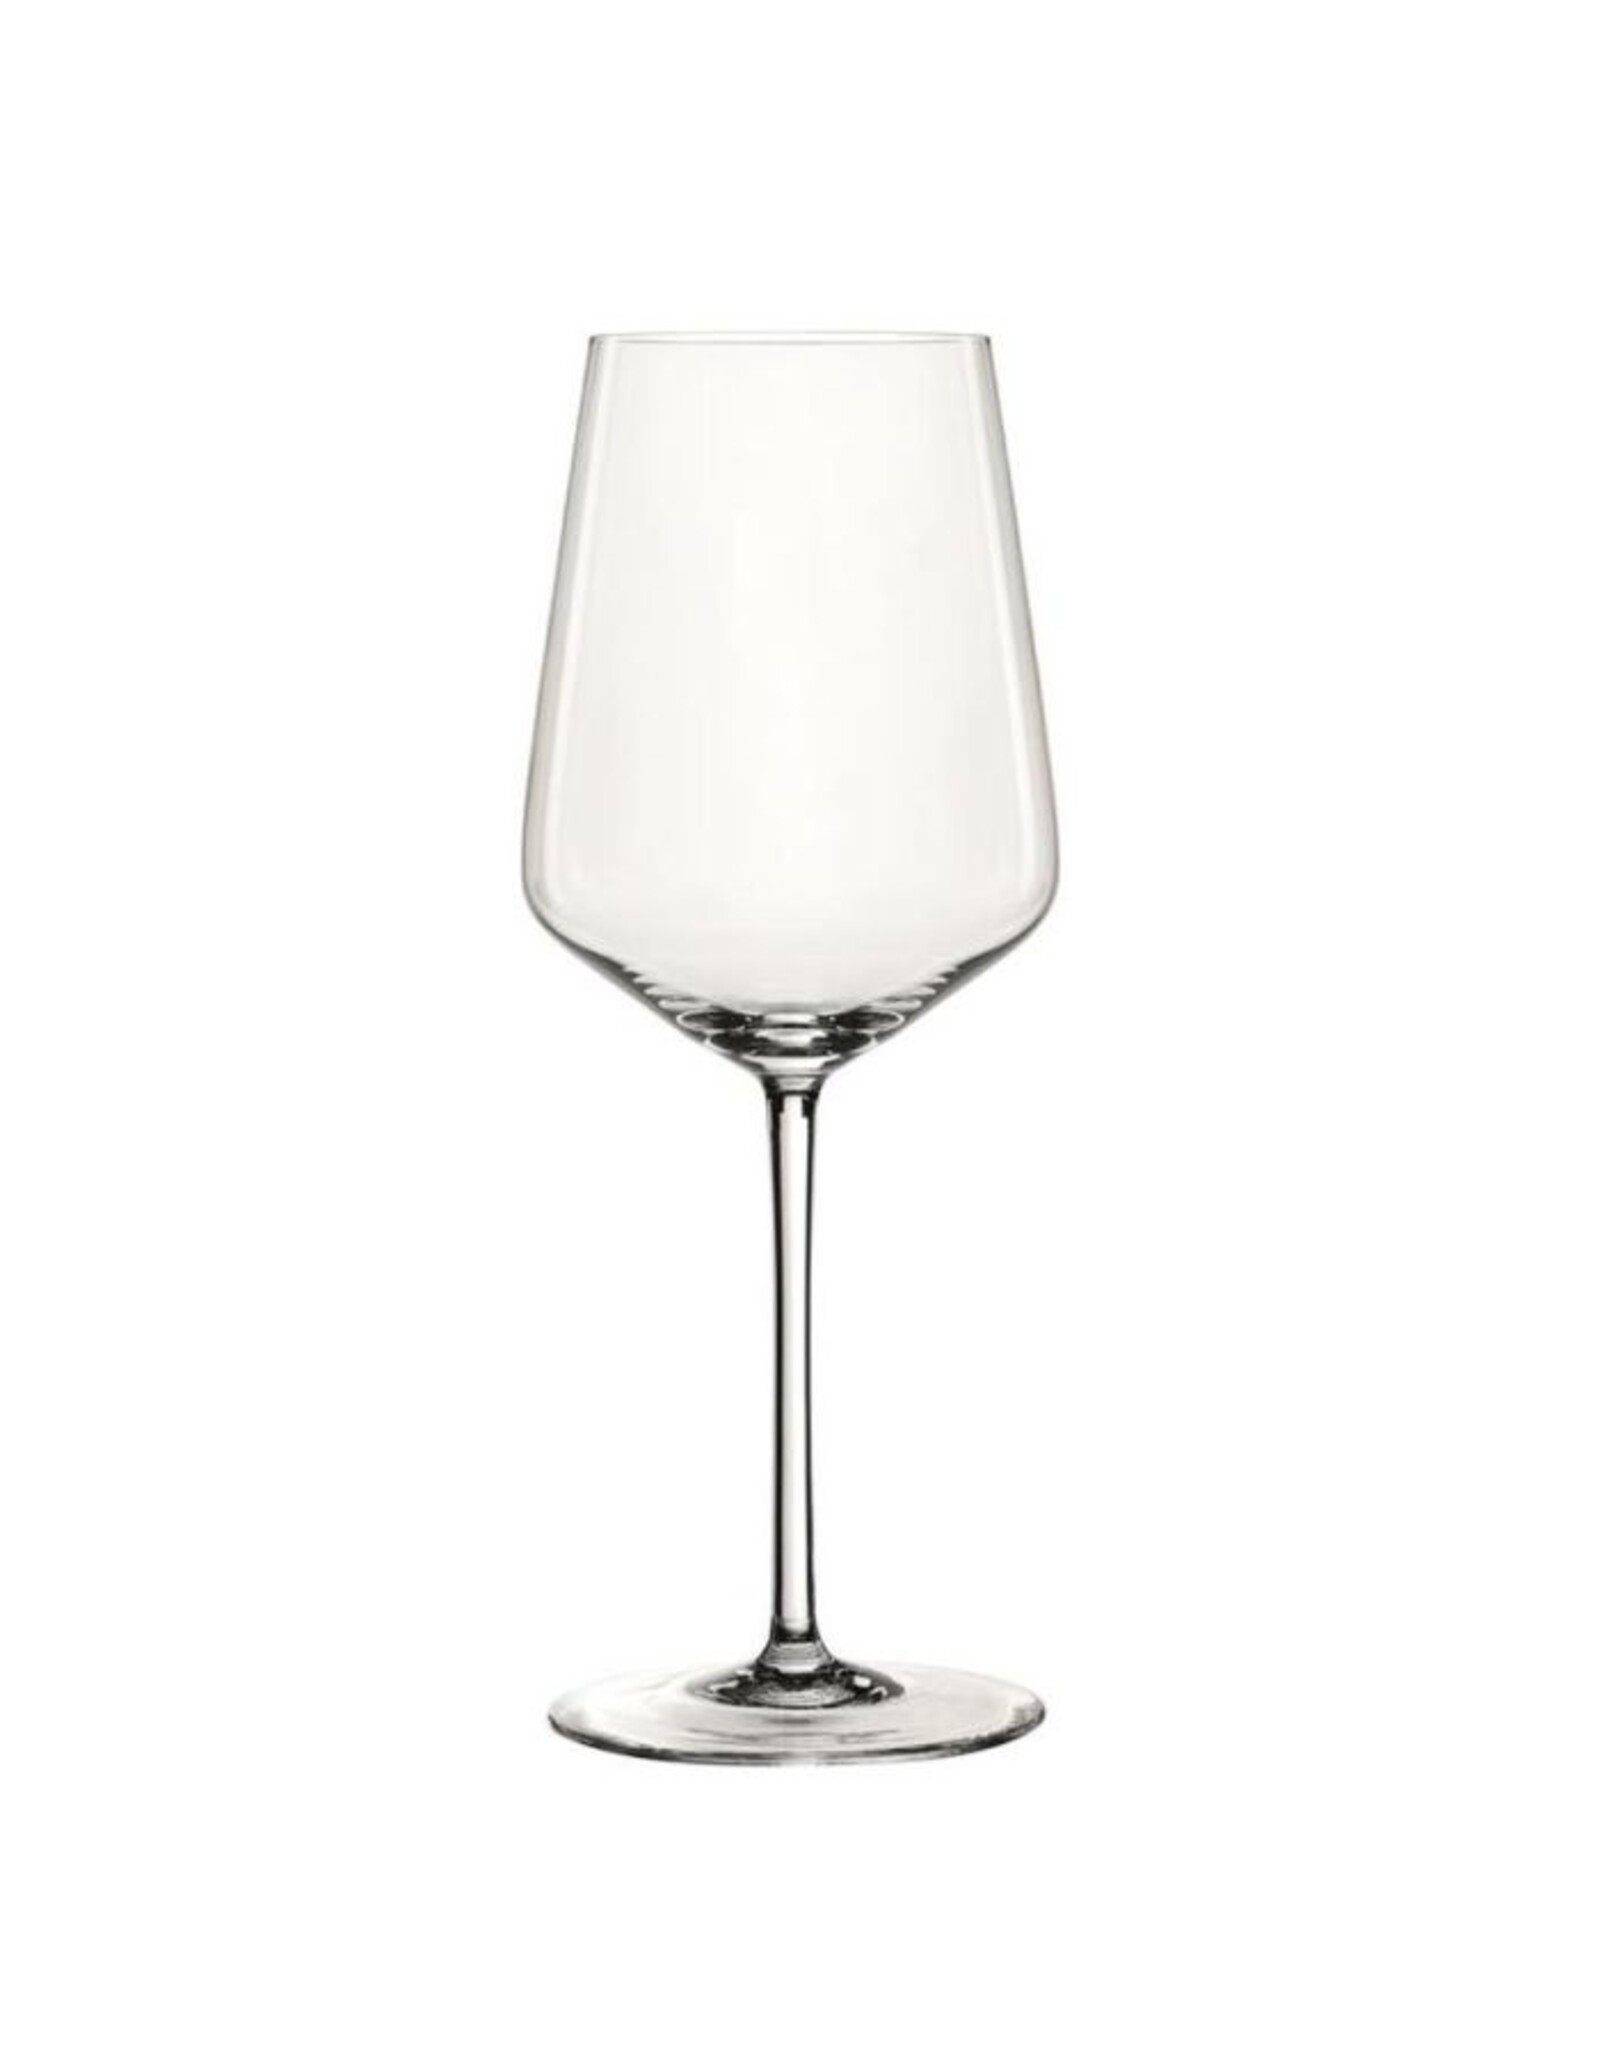 Materialisme Hoogte Kano Spiegelau Style - Witte Wijnglas - Set van 4 - 440ml - Marc Cook & Home |  Webshop | Fysieke winkel in Elst